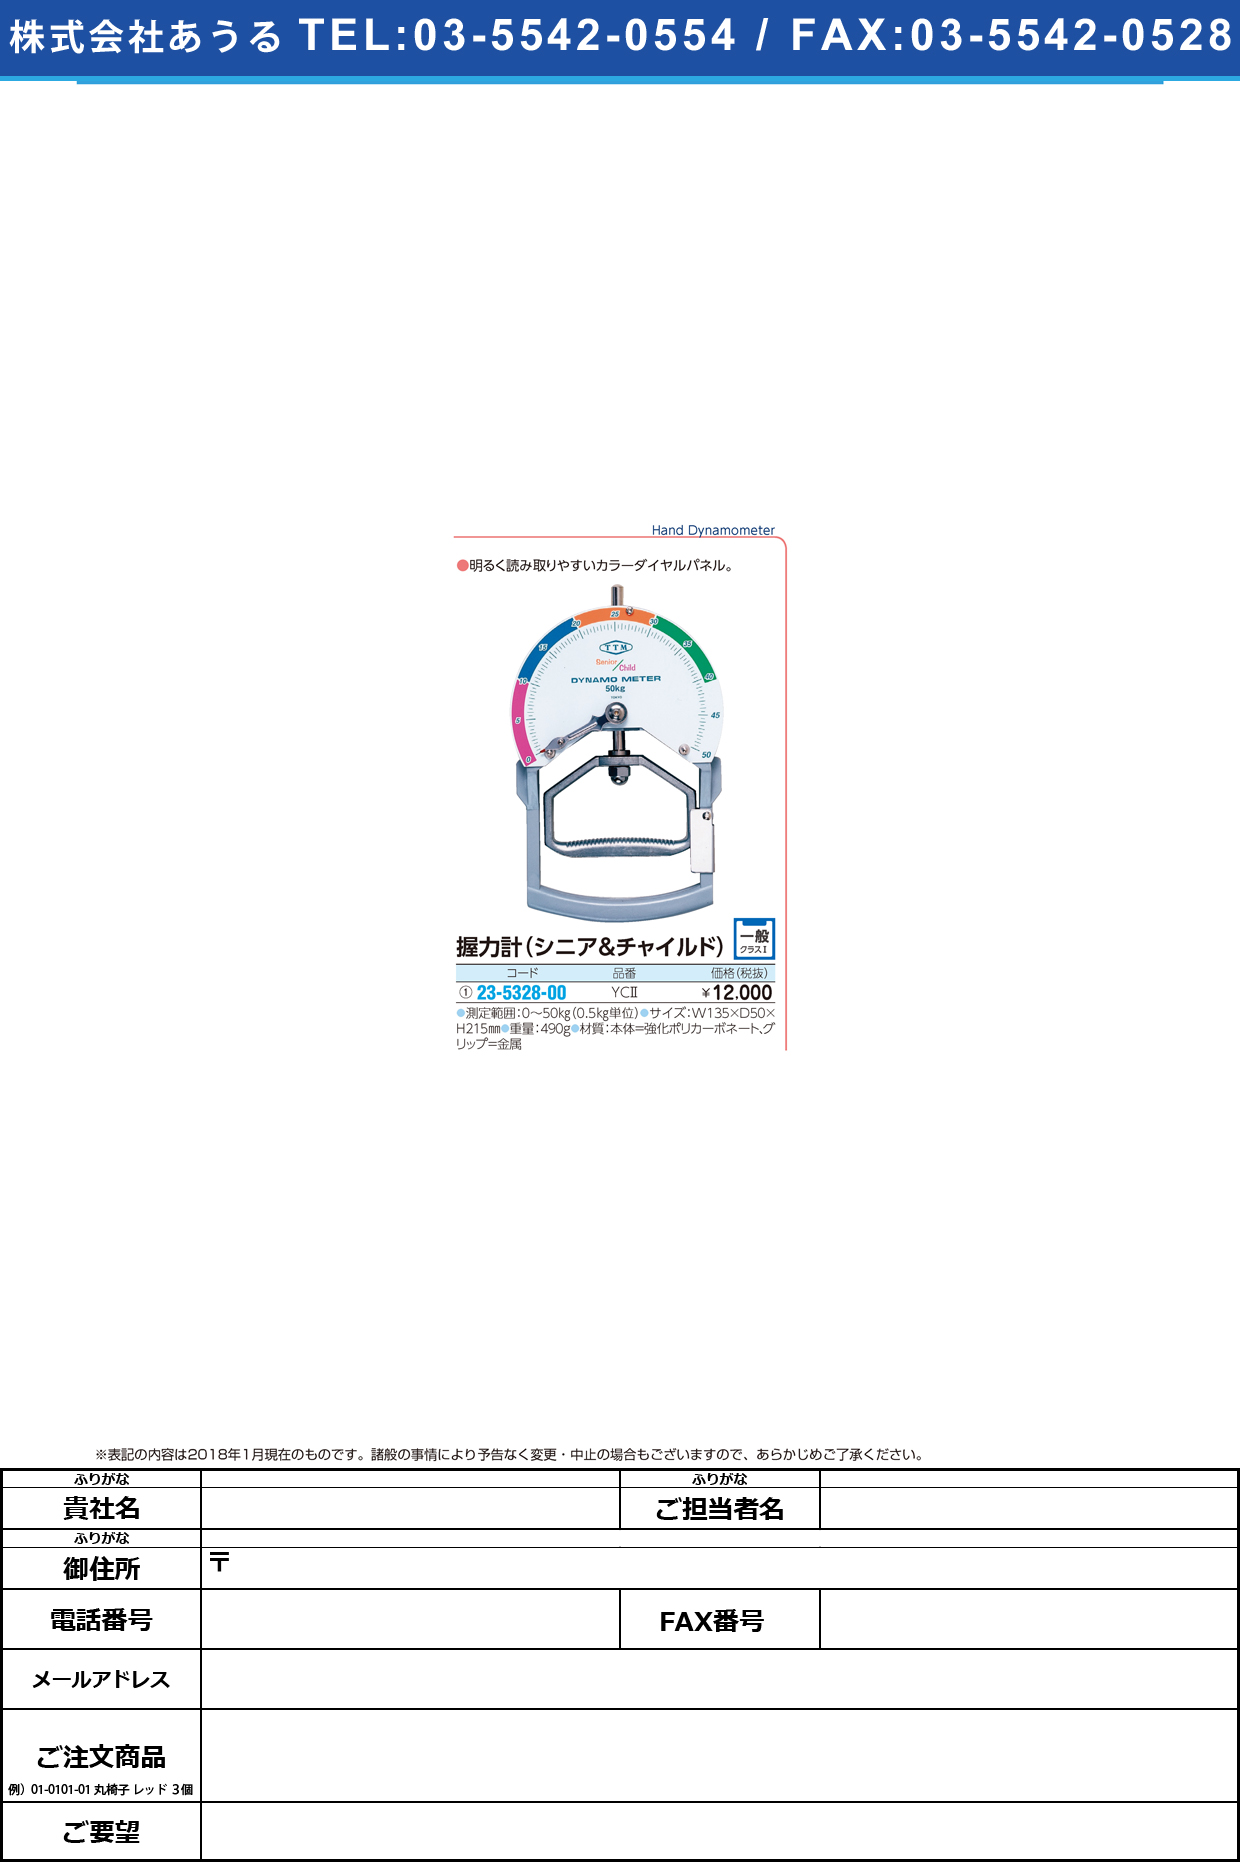 (23-5328-00)握力計（シニア＆チャイルド） YC2 ｱｸﾘｮｸｹｲ(ｼﾆｱｱﾝﾄﾞﾁｬｲﾙﾄ【1台単位】【2018年カタログ商品】